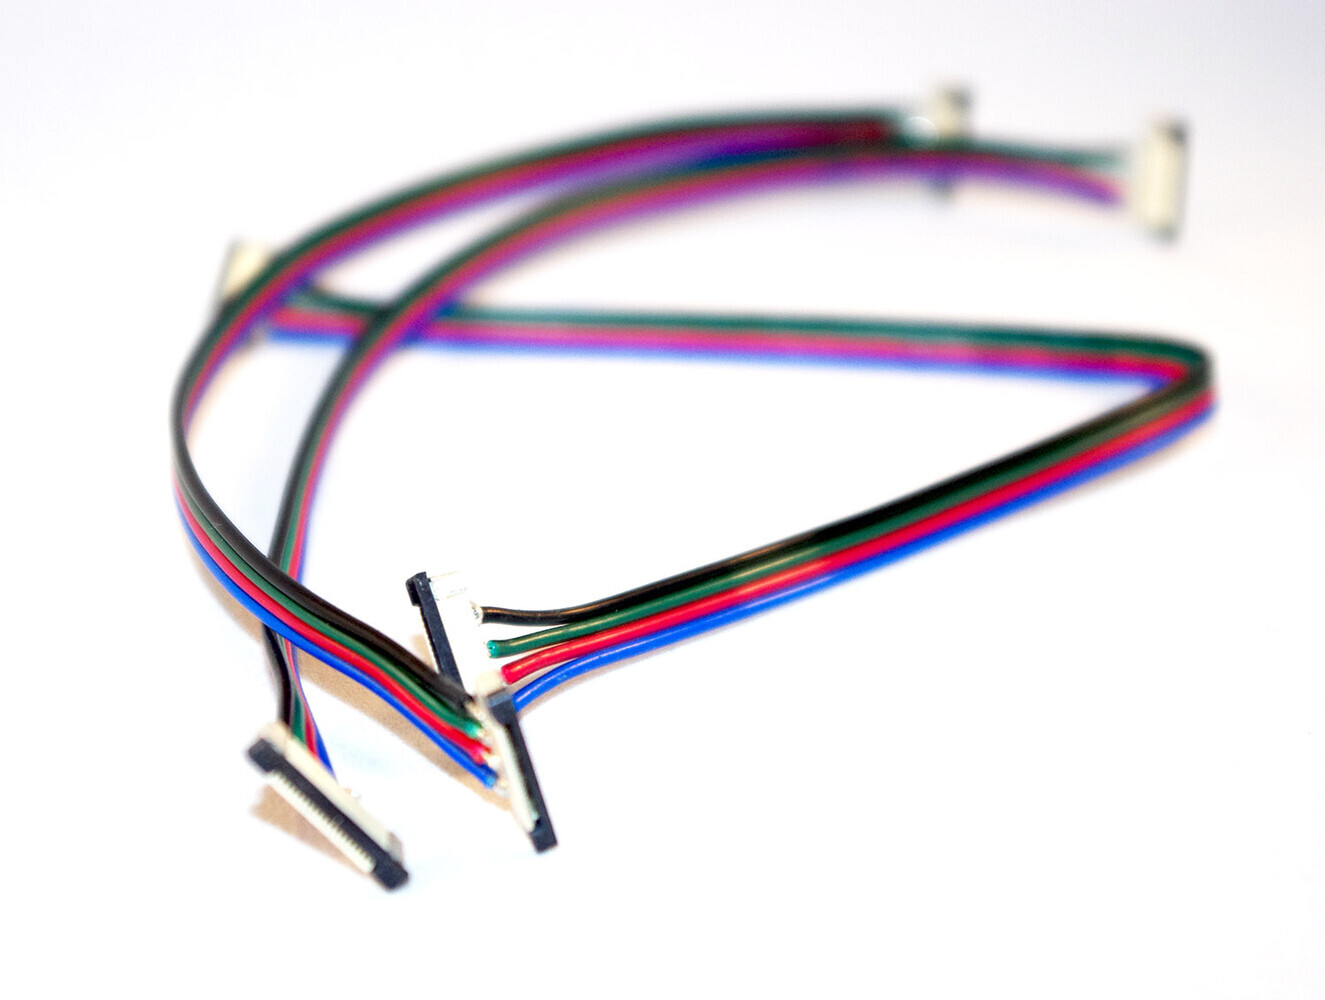 LED Universum 15cm 4-pol Kabel mit Schiebebefestigung Schnellverbinder für RGB LED Streifen